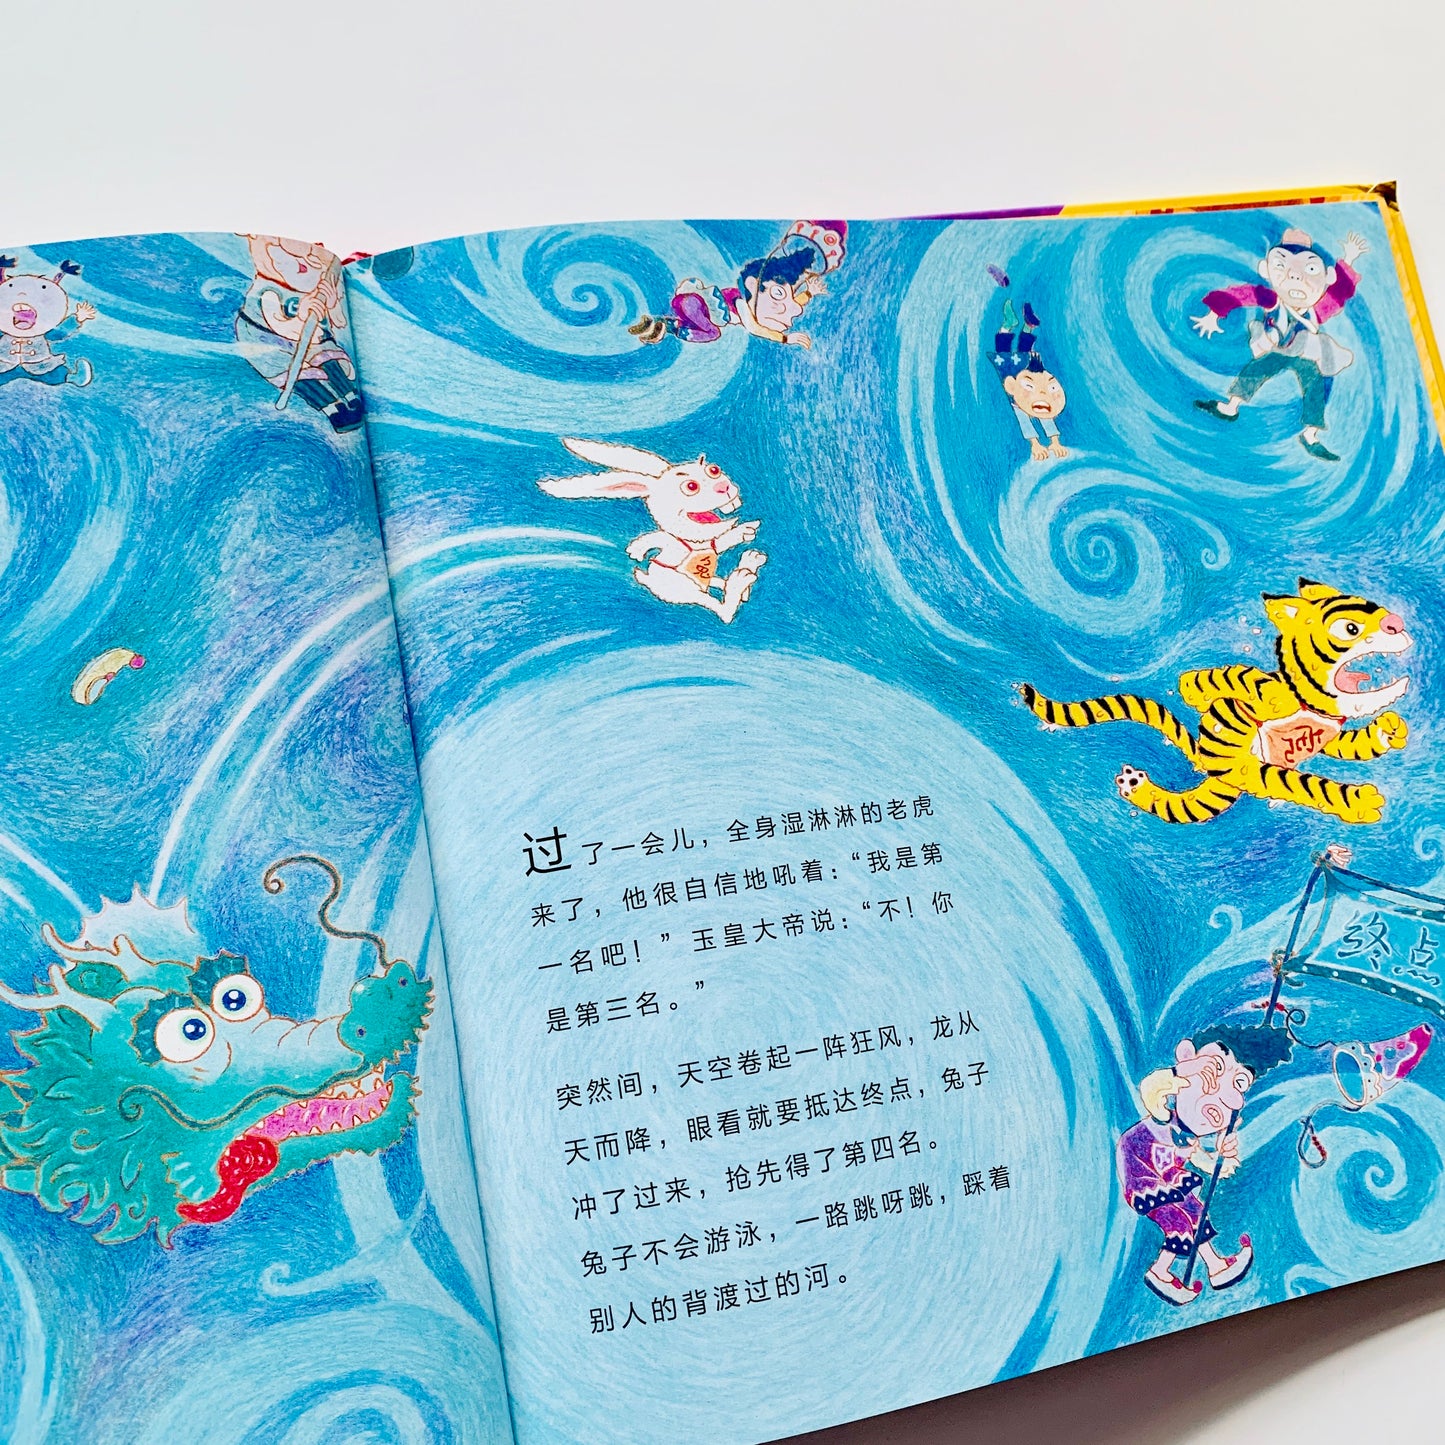 十二生肖的故事 (Story of the Chinese Zodiac)